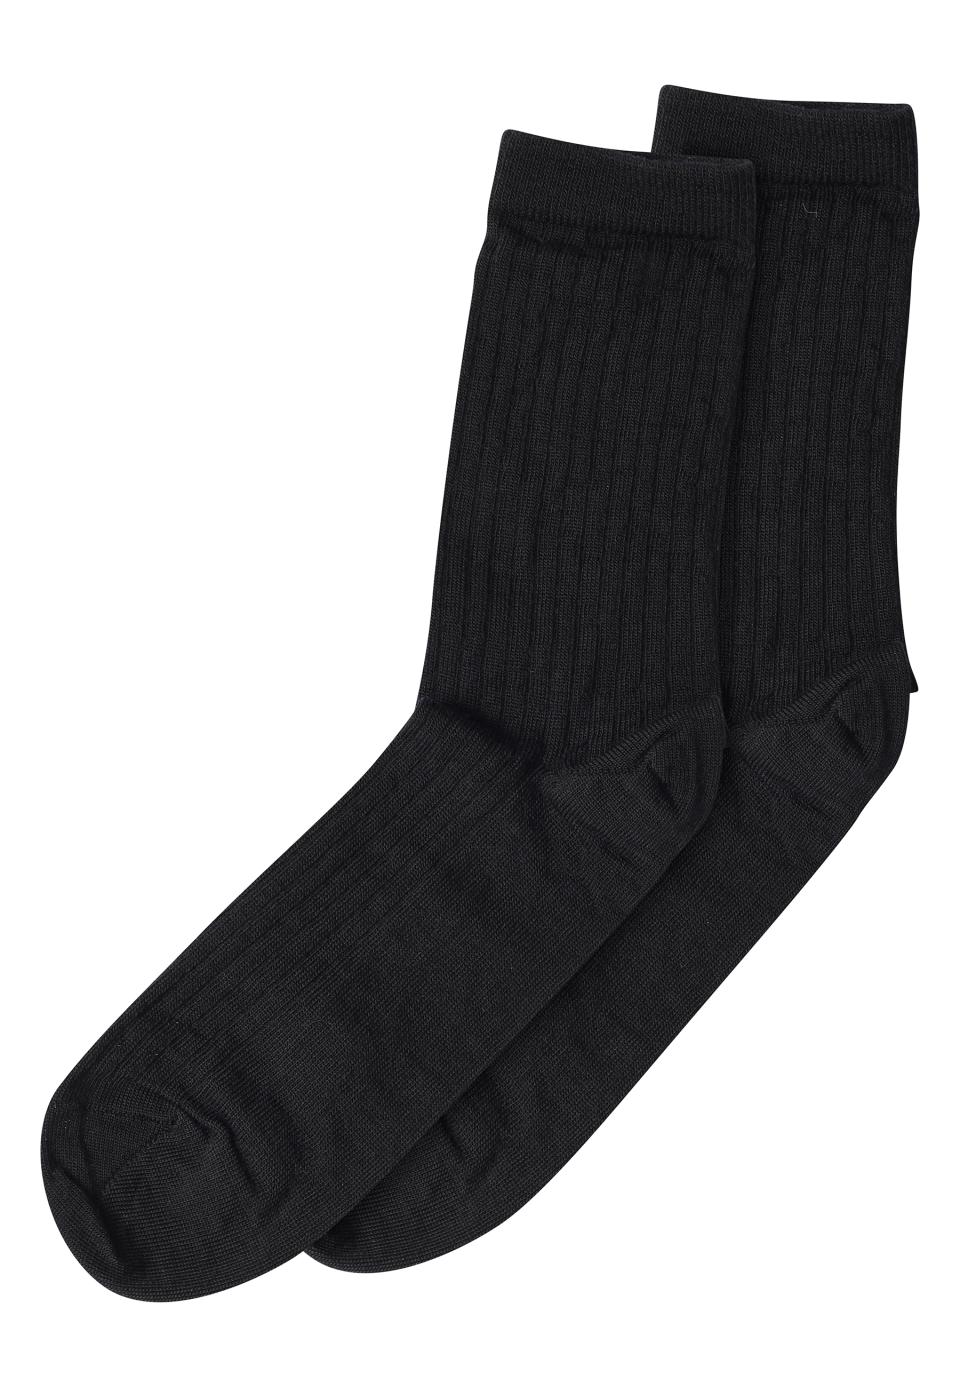 Wool rib socks